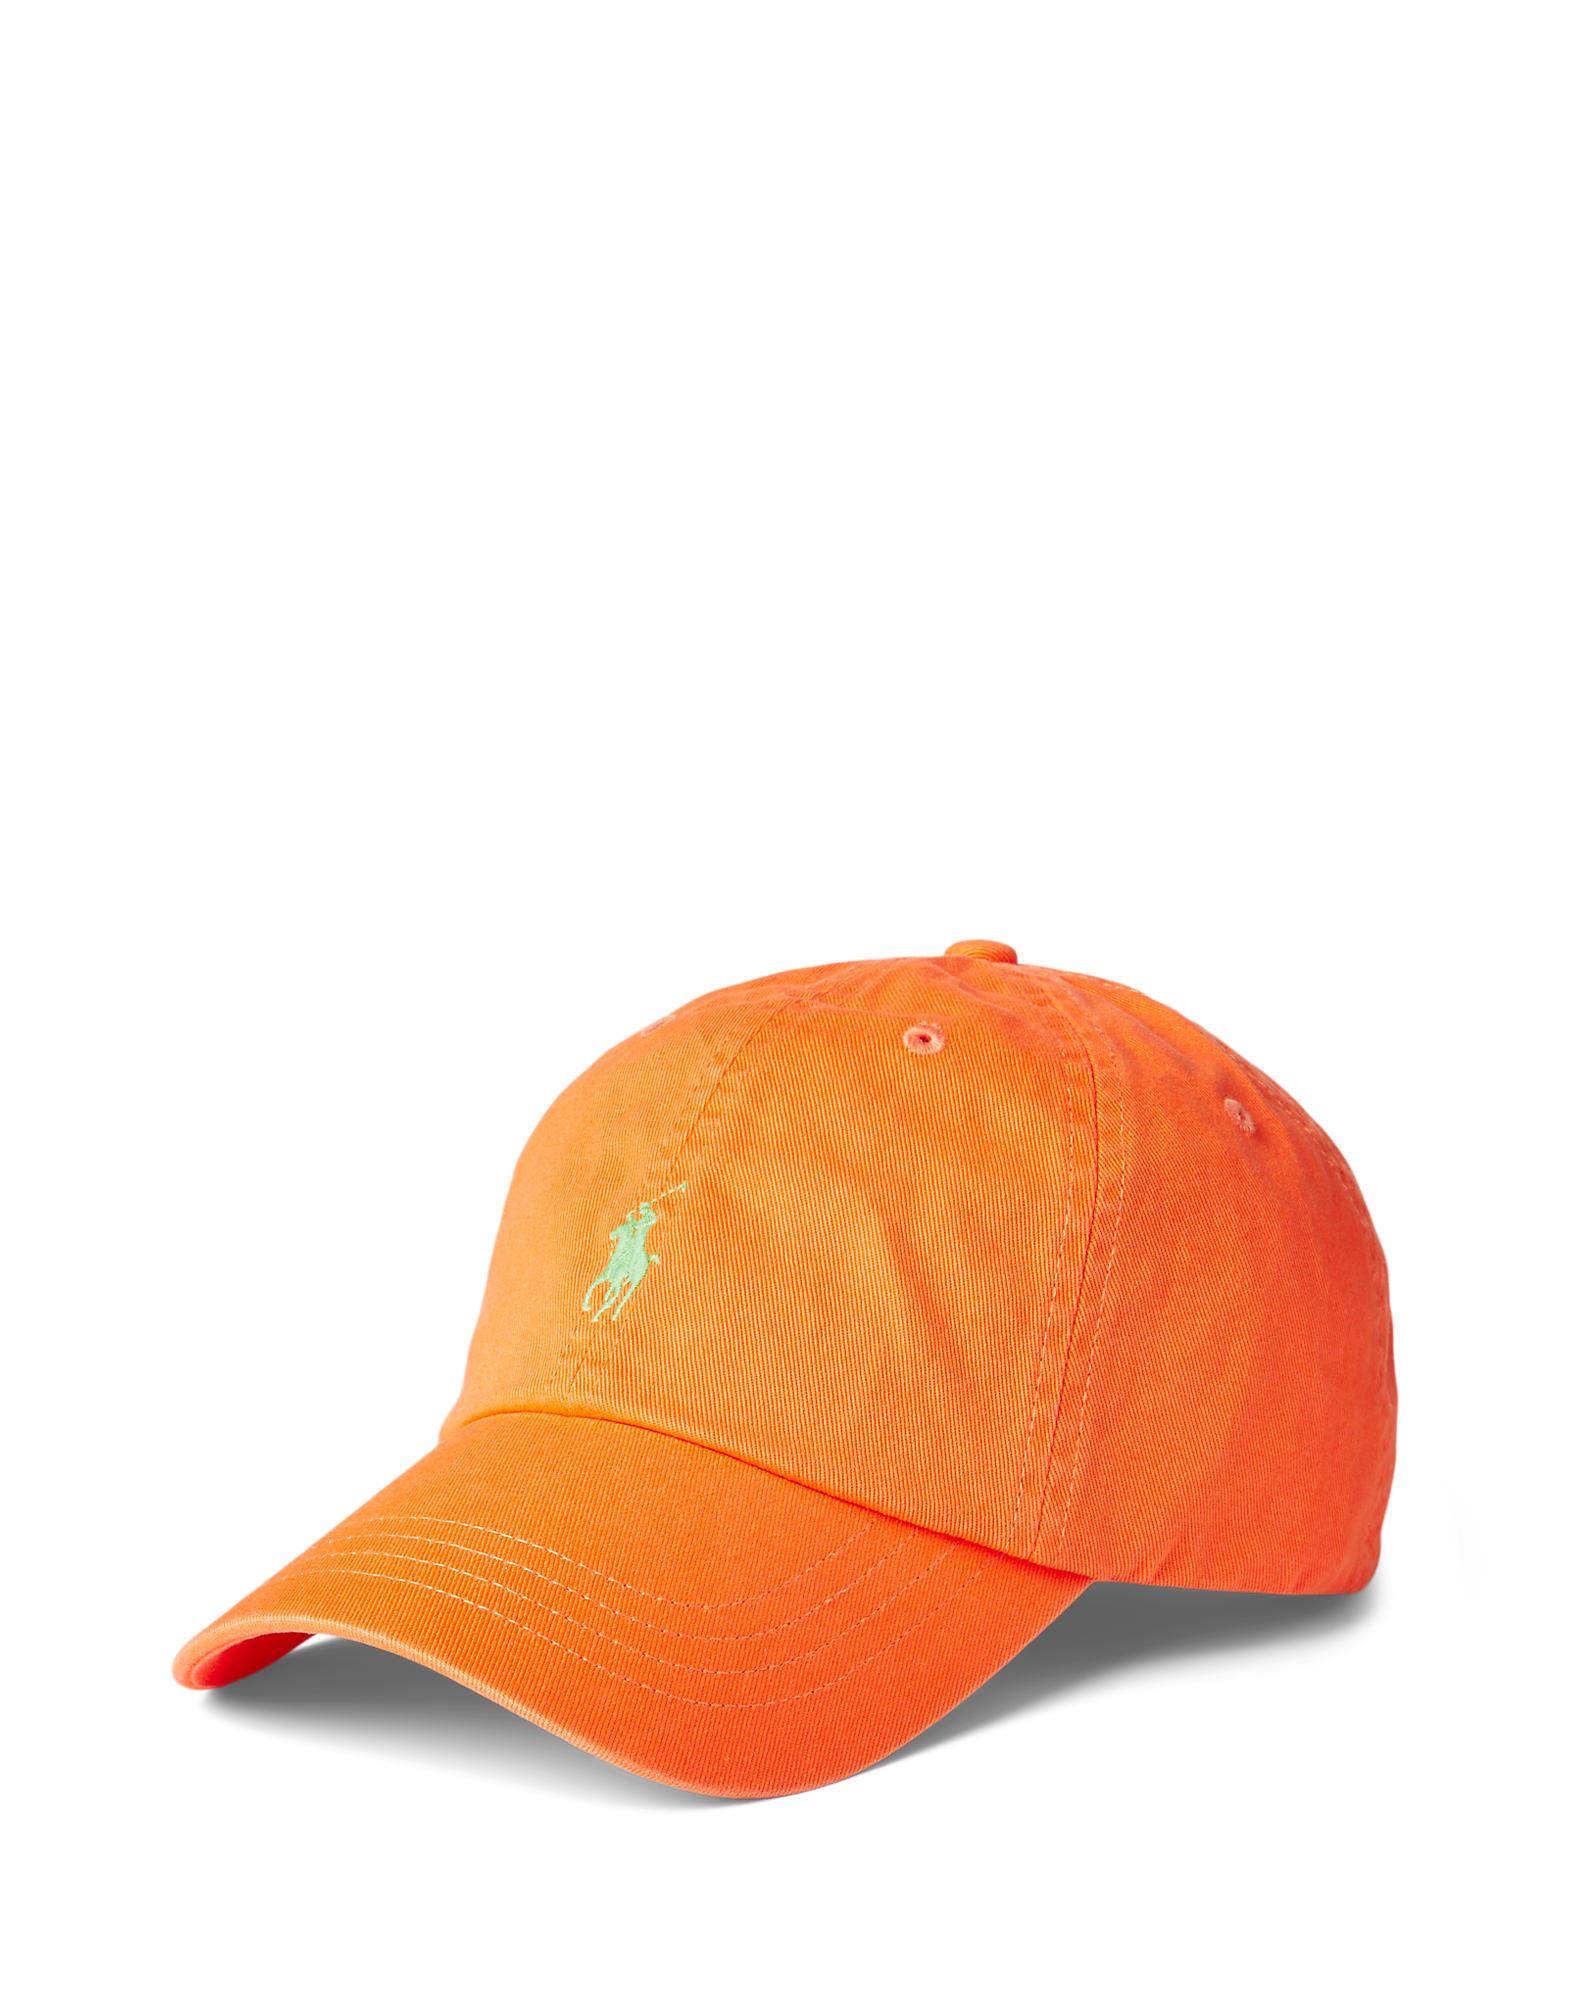 Polo Ralph Lauren Hats In Resort Orange